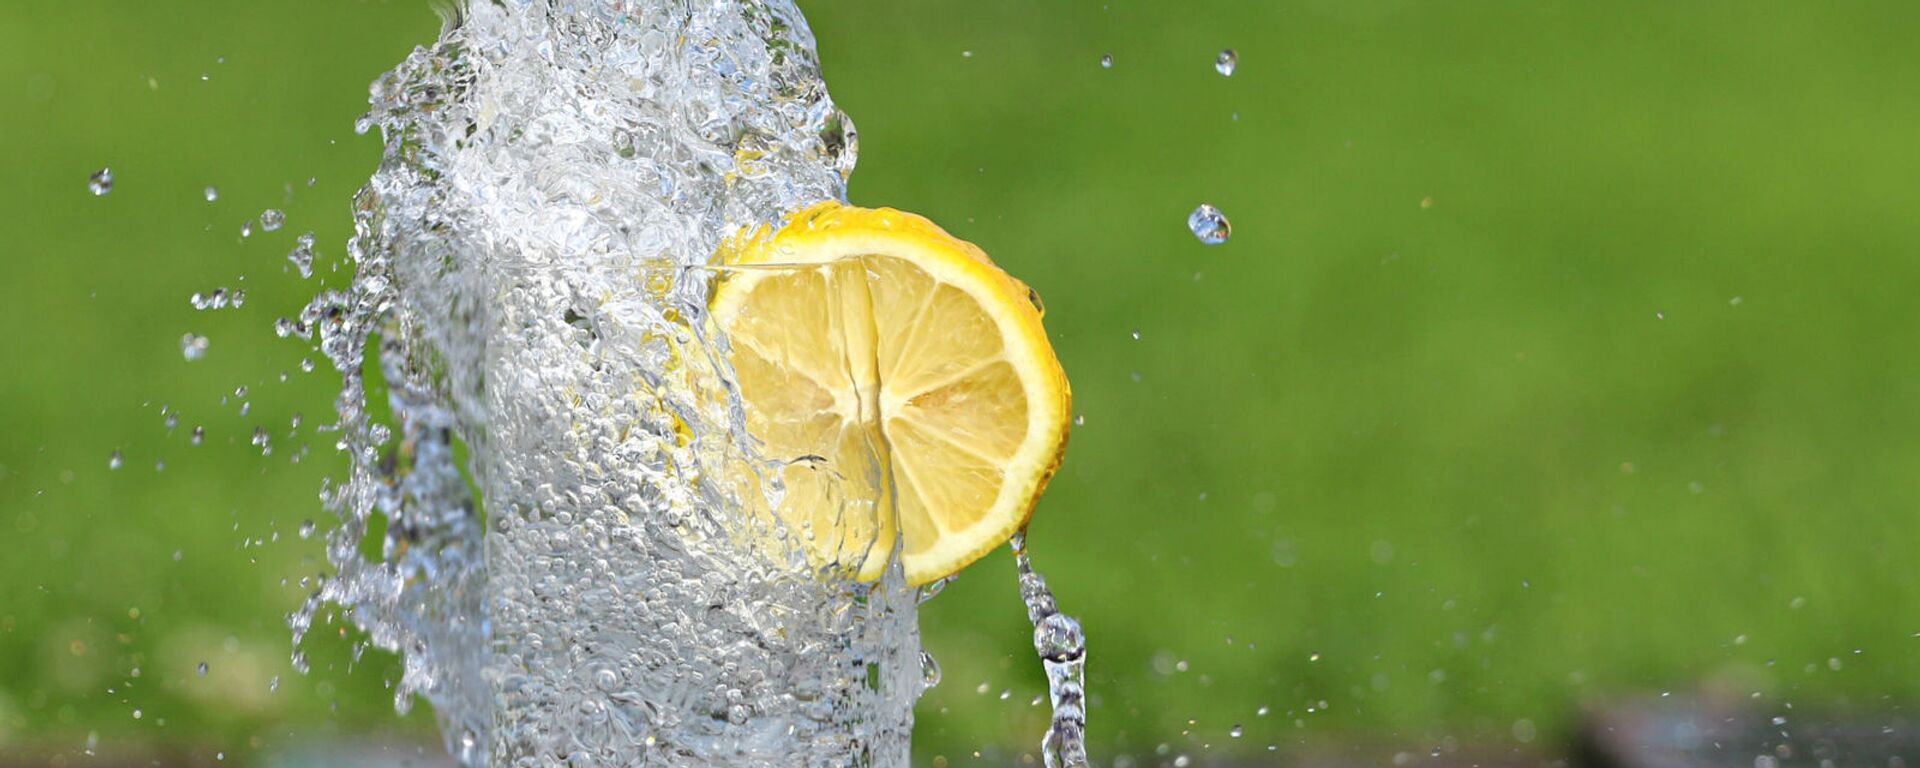 Холодная вода в бокале с долькой лимона - Sputnik Армения, 1920, 16.06.2020